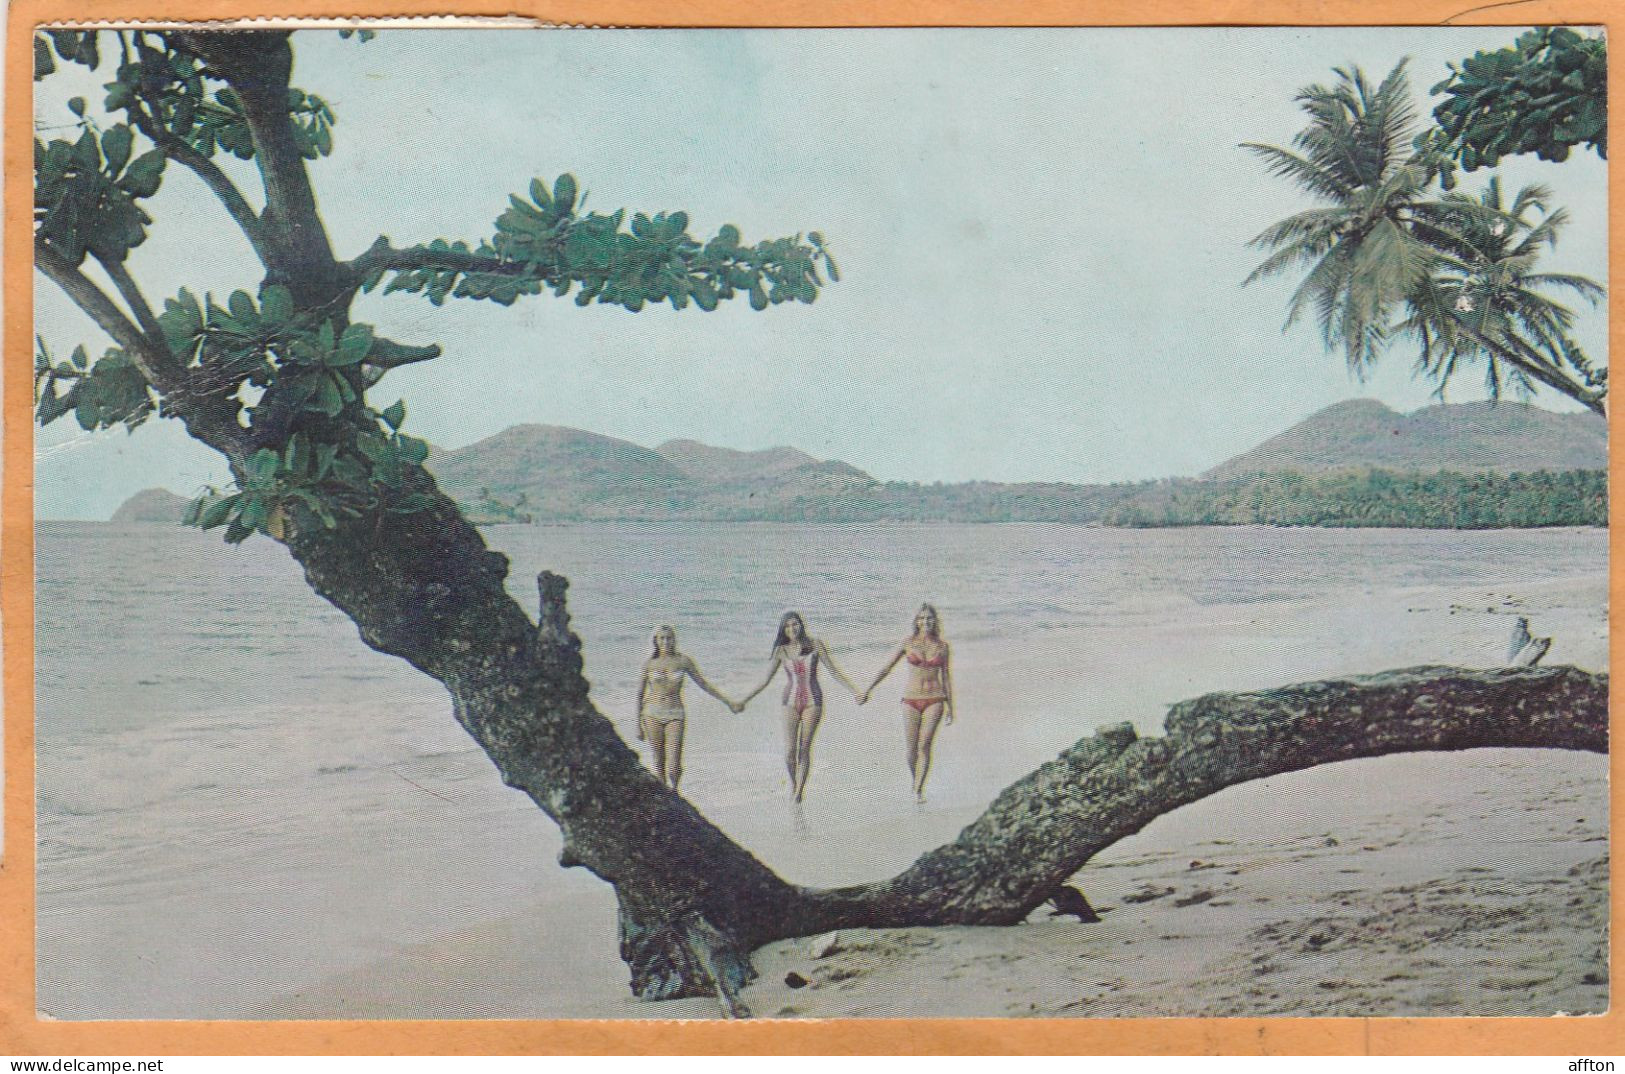 Saint Lucia Old Postcard Mailed - Santa Lucia